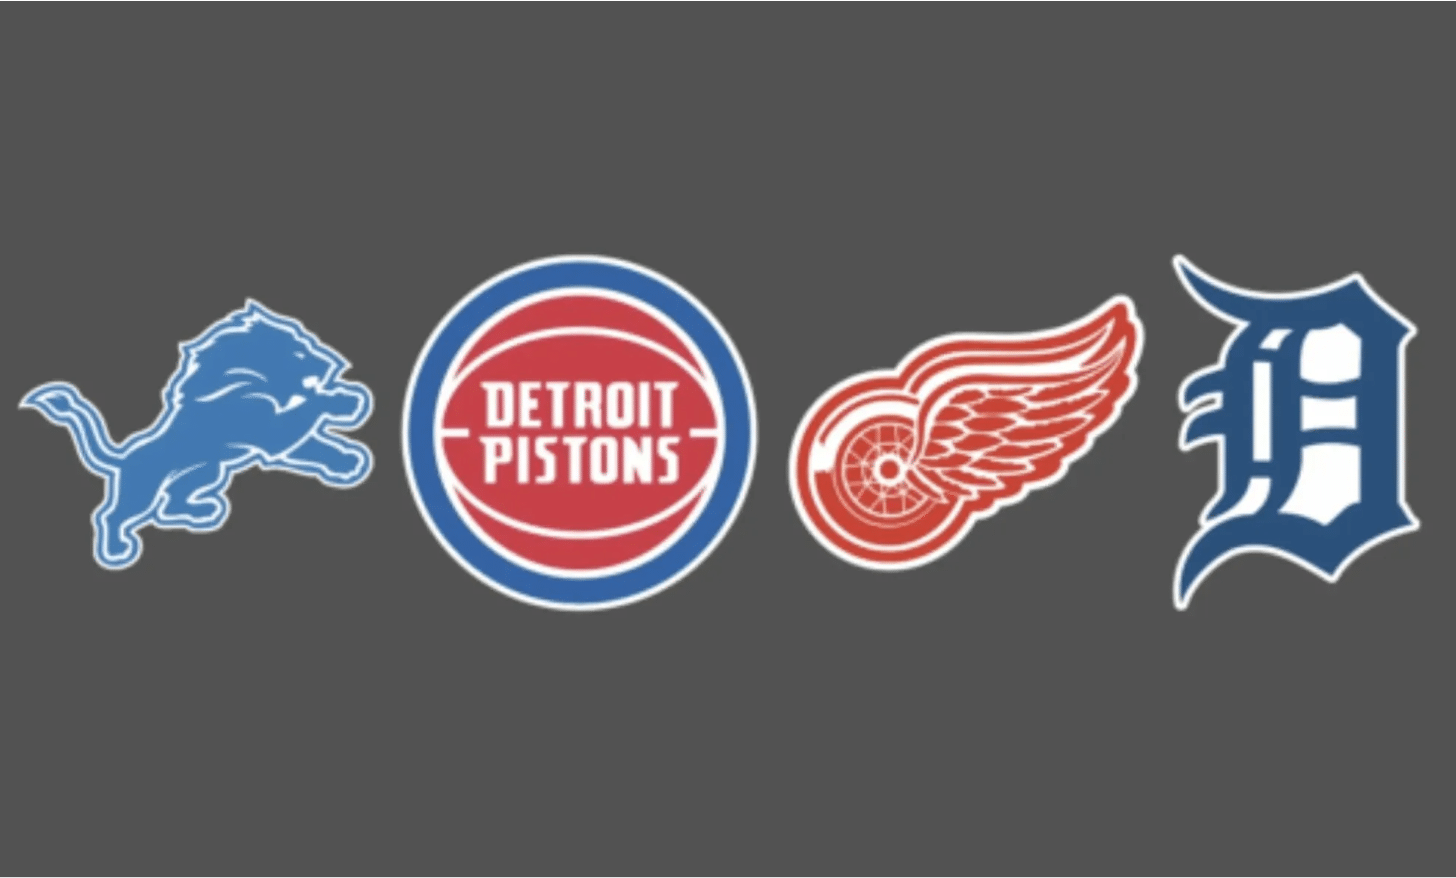 Detroit Sports Top 5
